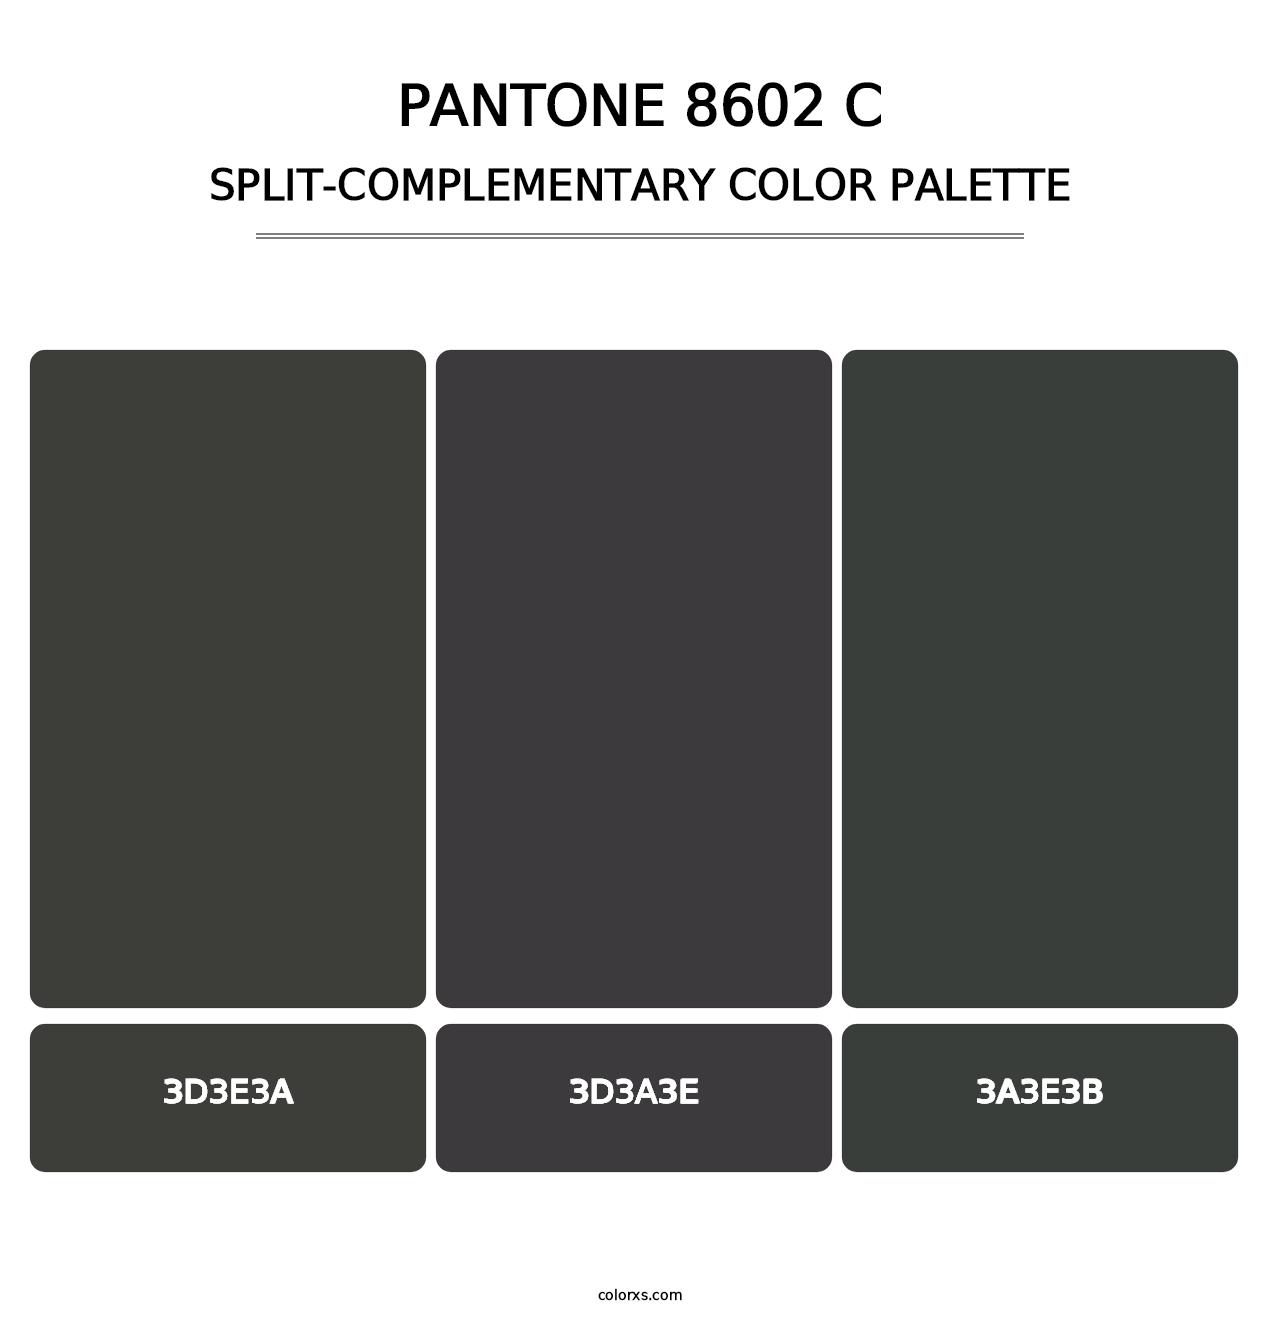 PANTONE 8602 C - Split-Complementary Color Palette